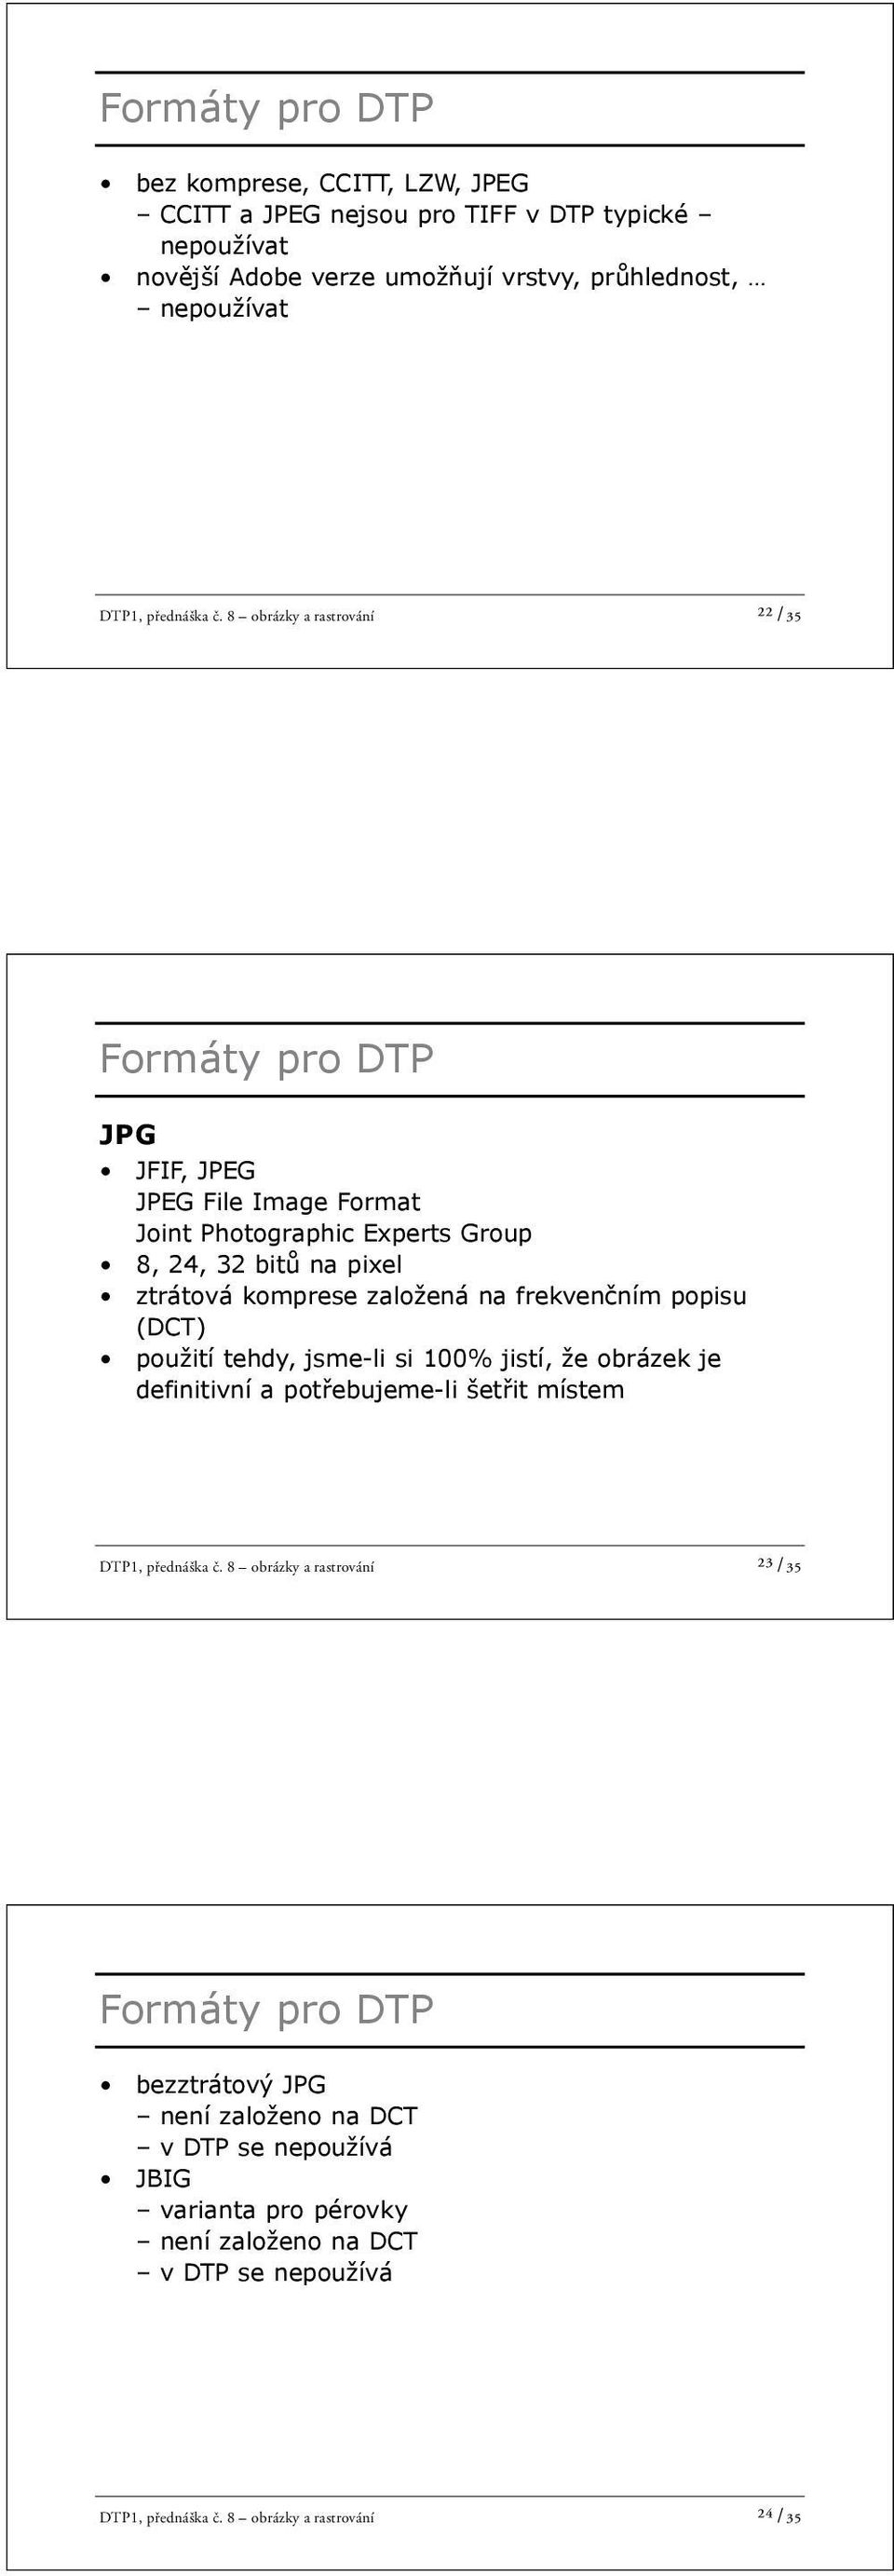 ním popisu (DCT) použití tehdy, jsme-li si 100% jistí, že obrázek je definitivní a pot ebujeme-li šet it místem DTP1, přednáška č.